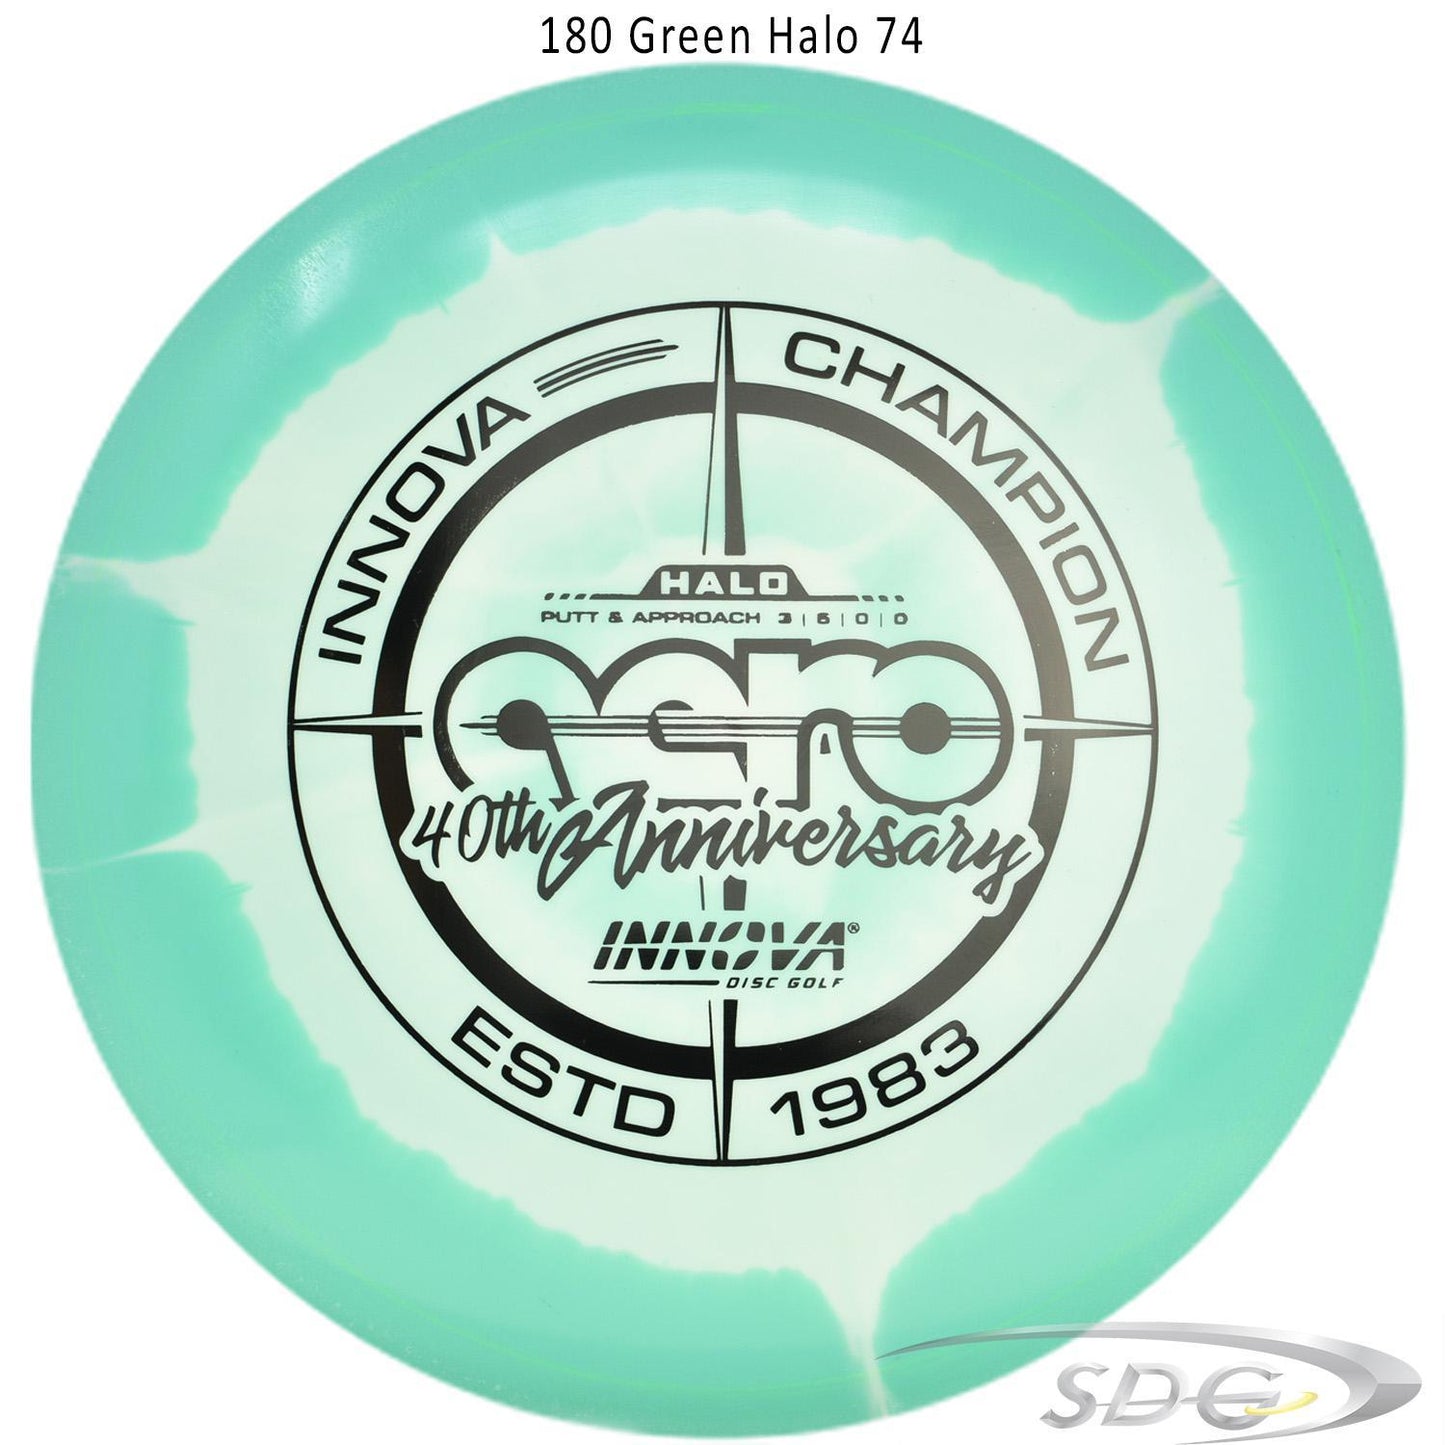 innova-halo-star-aero-40th-anniversary-le-disc-golf-putter 180 Green Halo 74 